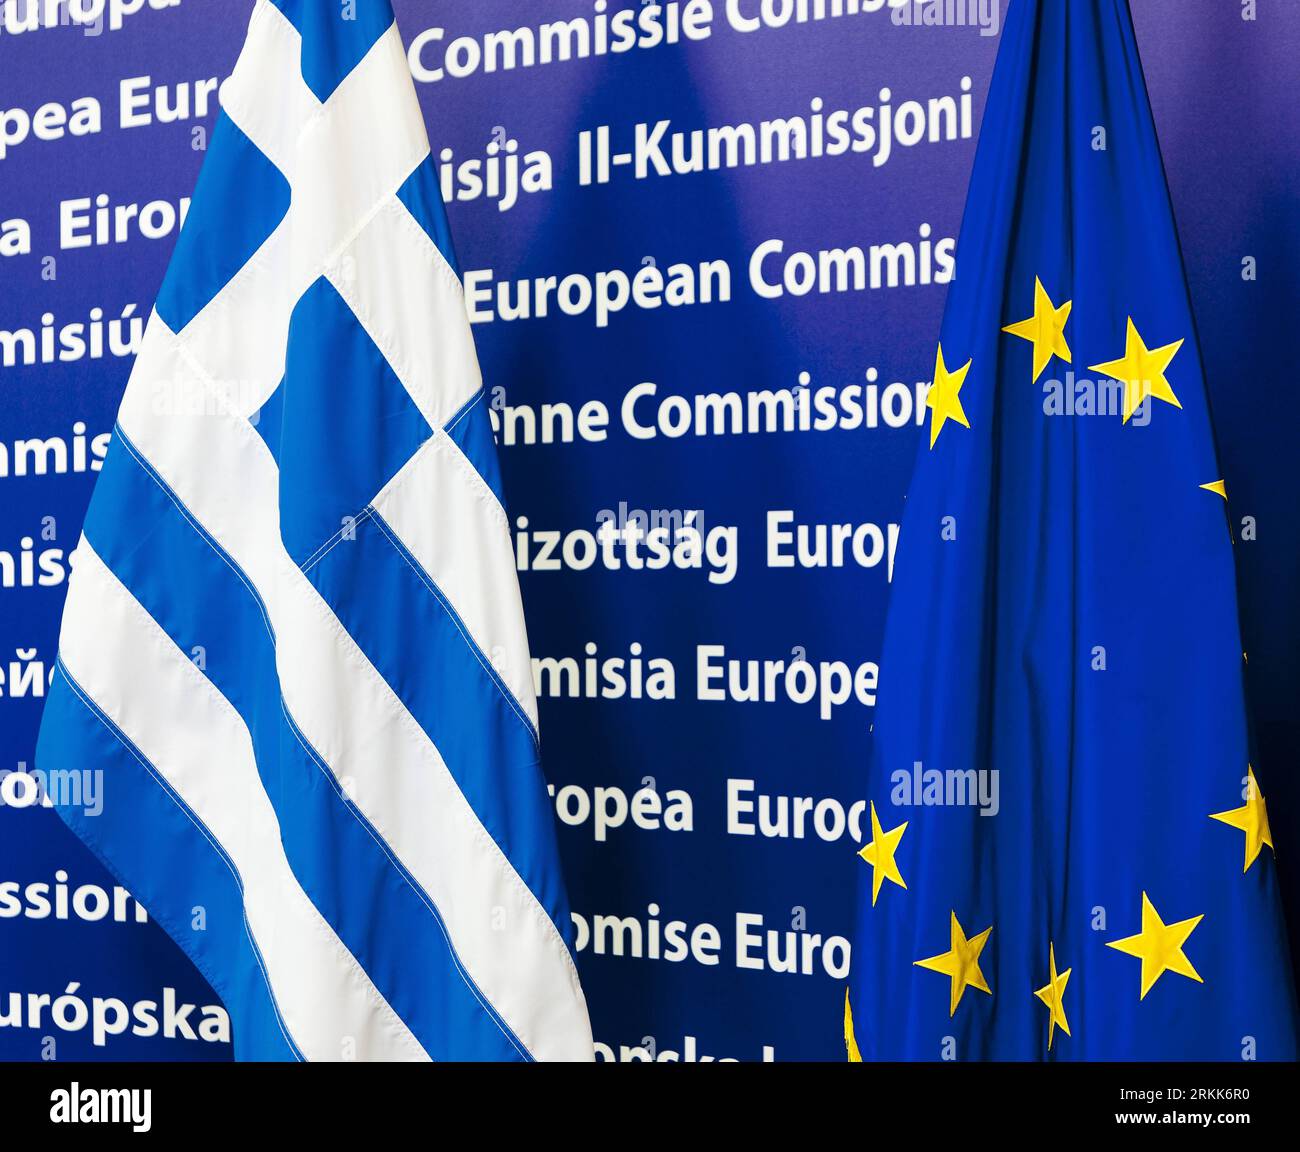 Bildnummer : 56206510 Datum : 22.10.2011 Copyright : imago/Xinhua (111022) -- BRUXELLES, 22 octobre 2011(Xinhua) -- drapeau de l'UE et drapeau national grec au siège de l'UE à Bruxelles, capitale de la Belgique, le 22 octobre 2011. Les pays de l'Euroszone tiendront deux sommets dimanche et mercredi prochain, portant sur les questions de la dette grecque. (Xinhua/Thierry Monasse)(yt) BELGIQUE-BRUXELLES-eu-GRÈCE PUBLICATIONxNOTxINxCHN Politik Fahne Objekte eu Europafahne GRE Griechenlandfahne Highlight Symbol Krise xda x0x 2011 quadrat 56206510 Date 22 10 2011 Copyright Imago XINHUA Bruxelles OCT 22 2011 XINHUA eu FLA Banque D'Images